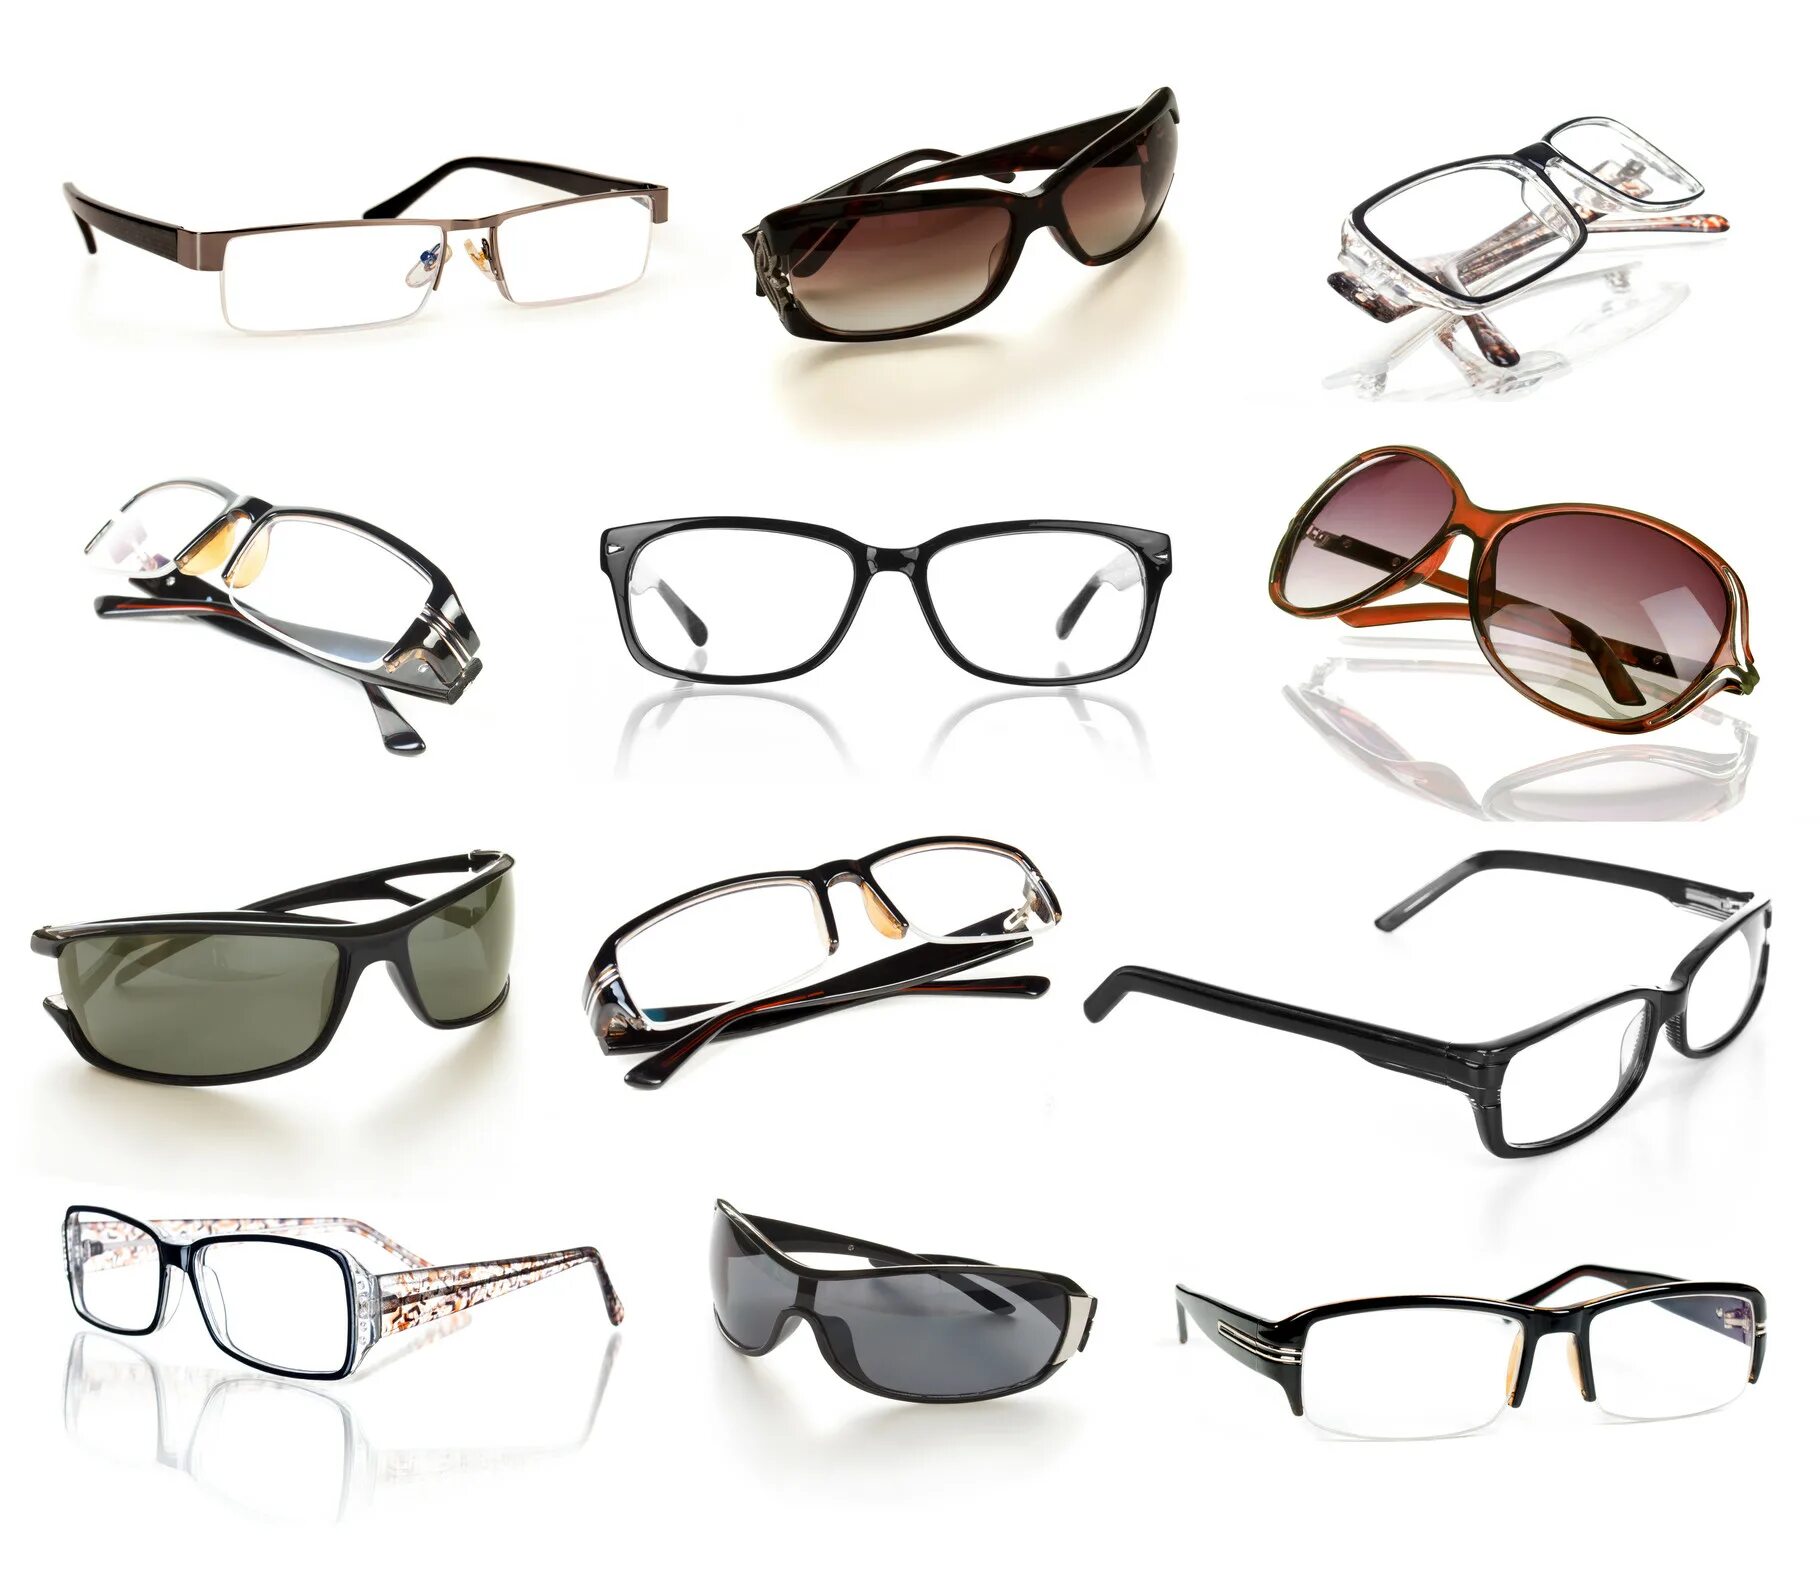 Glasses frame. Очки. Оправа для очков. Современные очки. Оправа солнцезащитных очков.